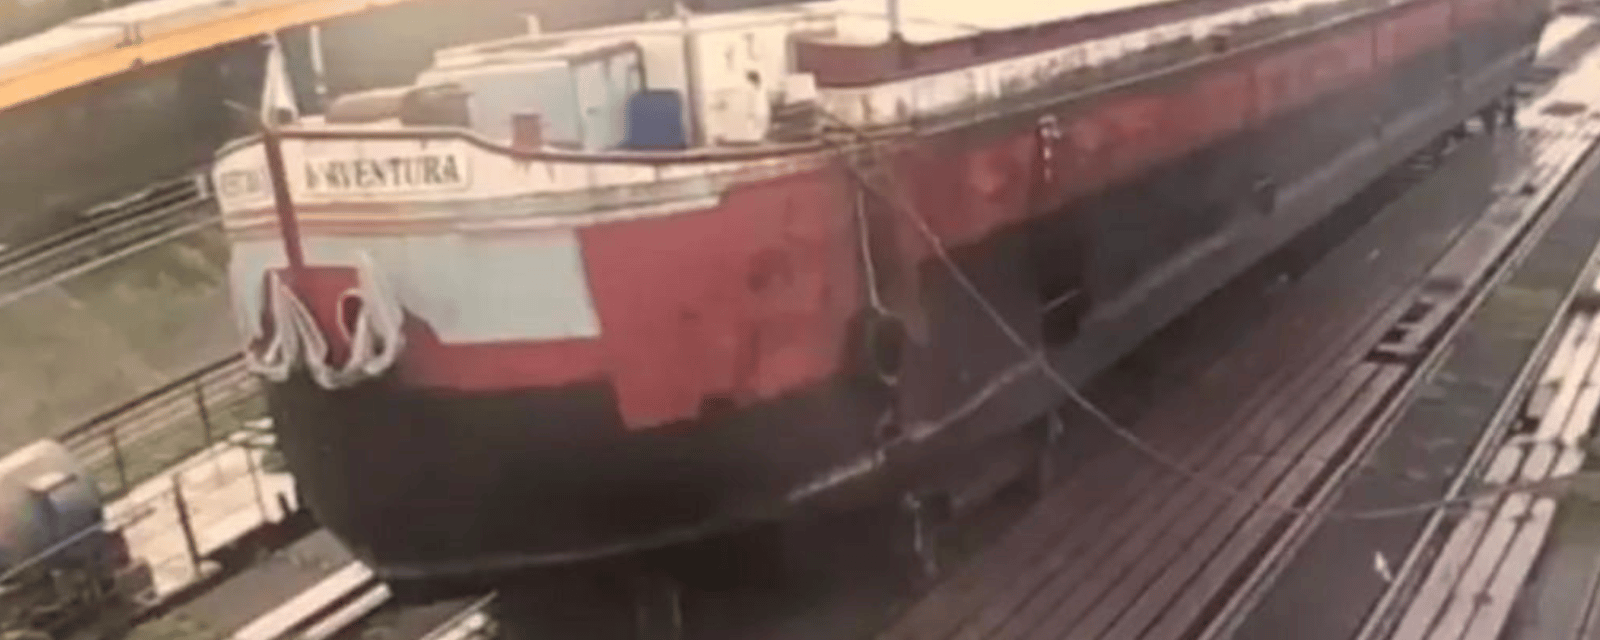 Un couple transforme un vieux bateau cargo en magnifique maison 